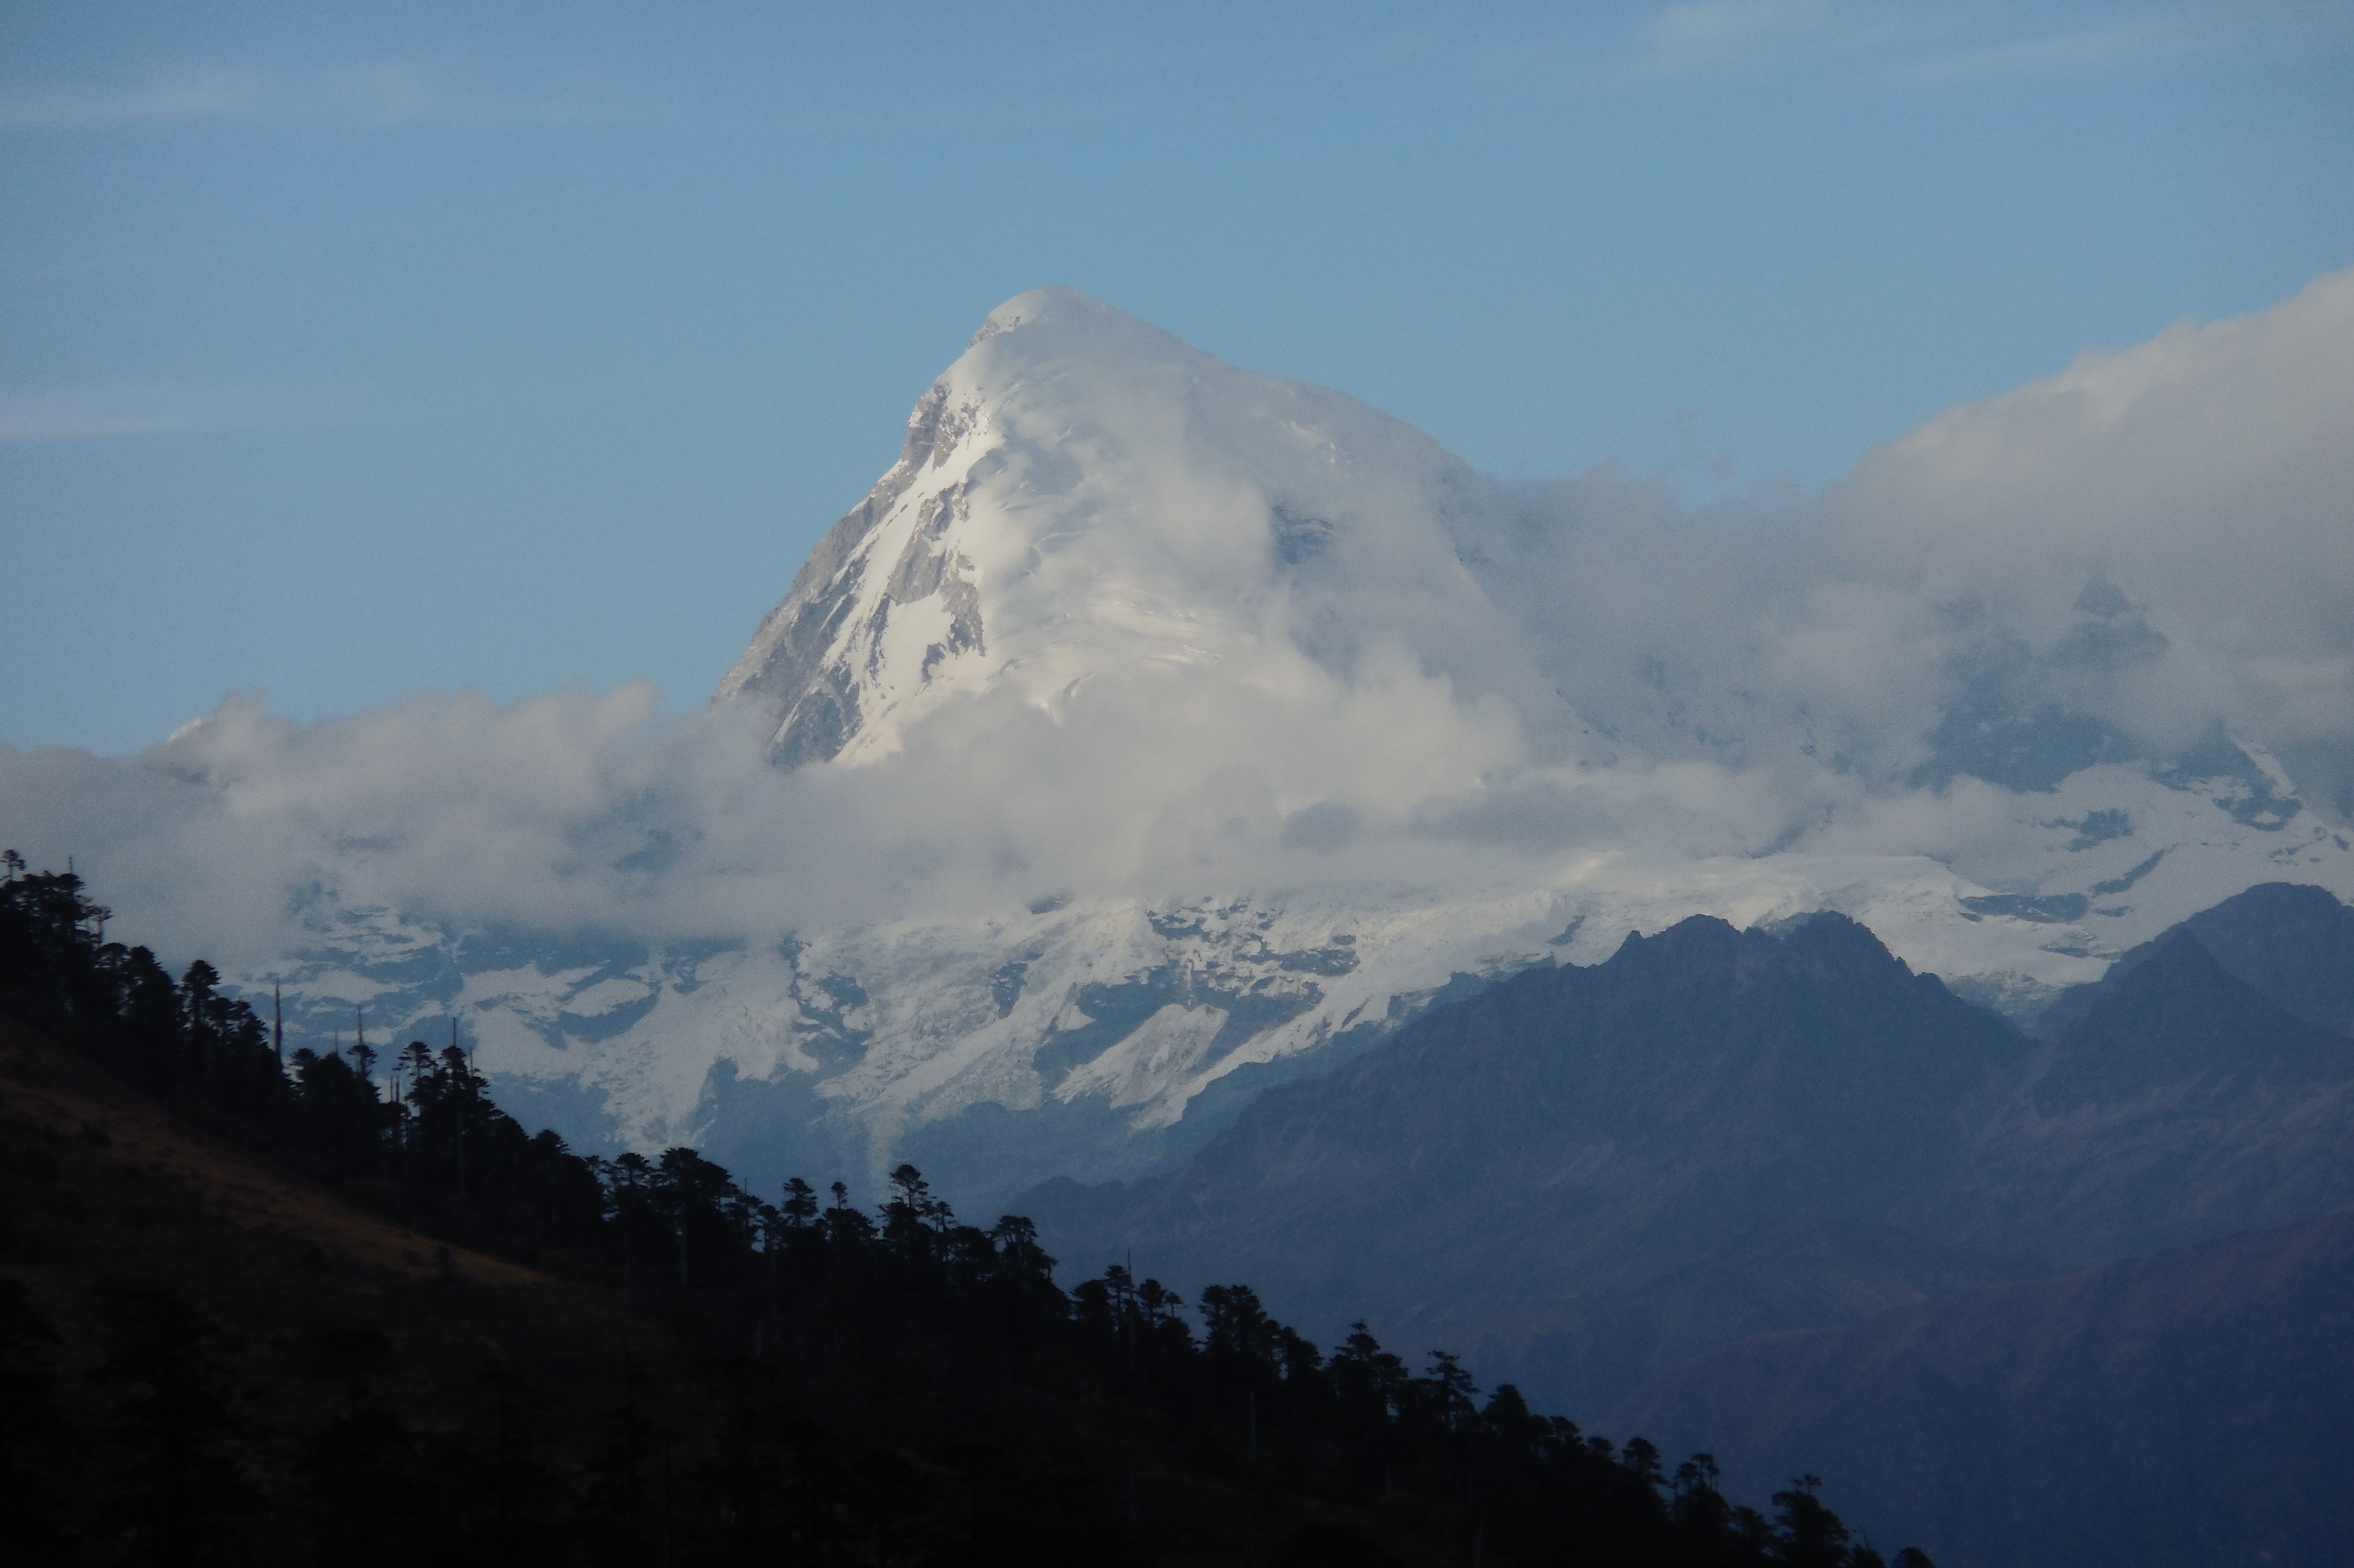 The Jomolhari Mountain (7326m)